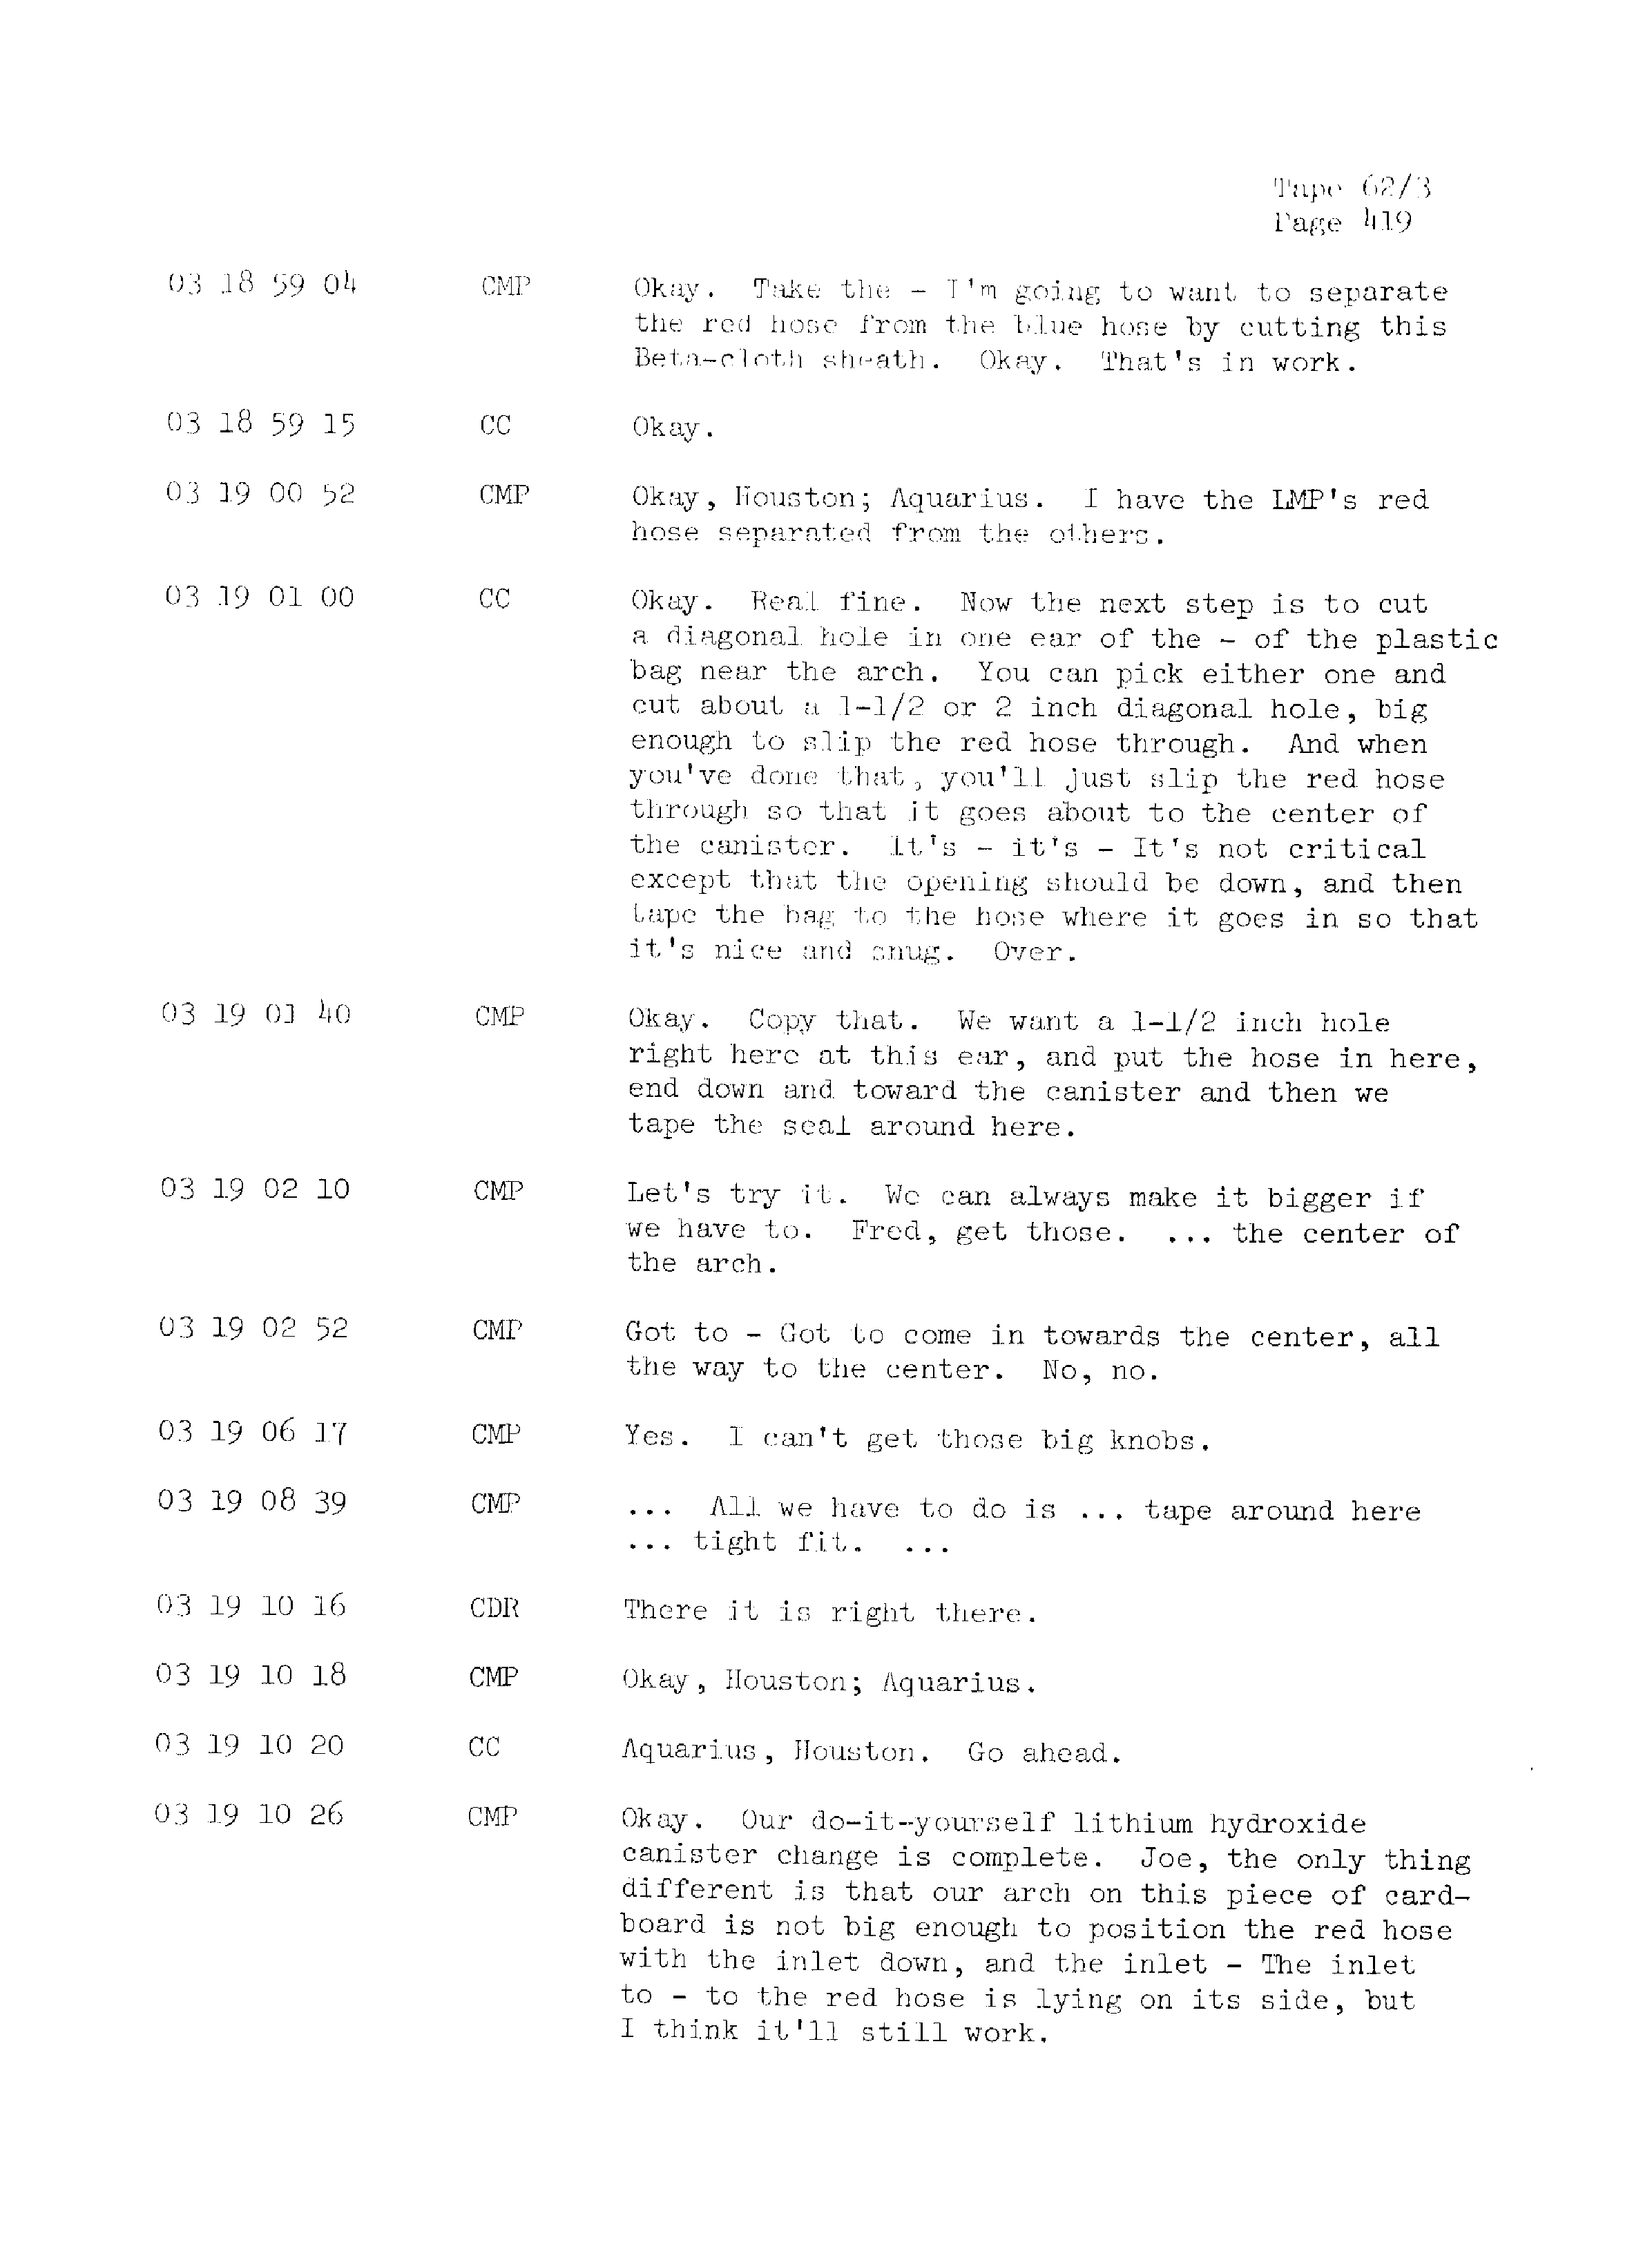 Page 426 of Apollo 13’s original transcript